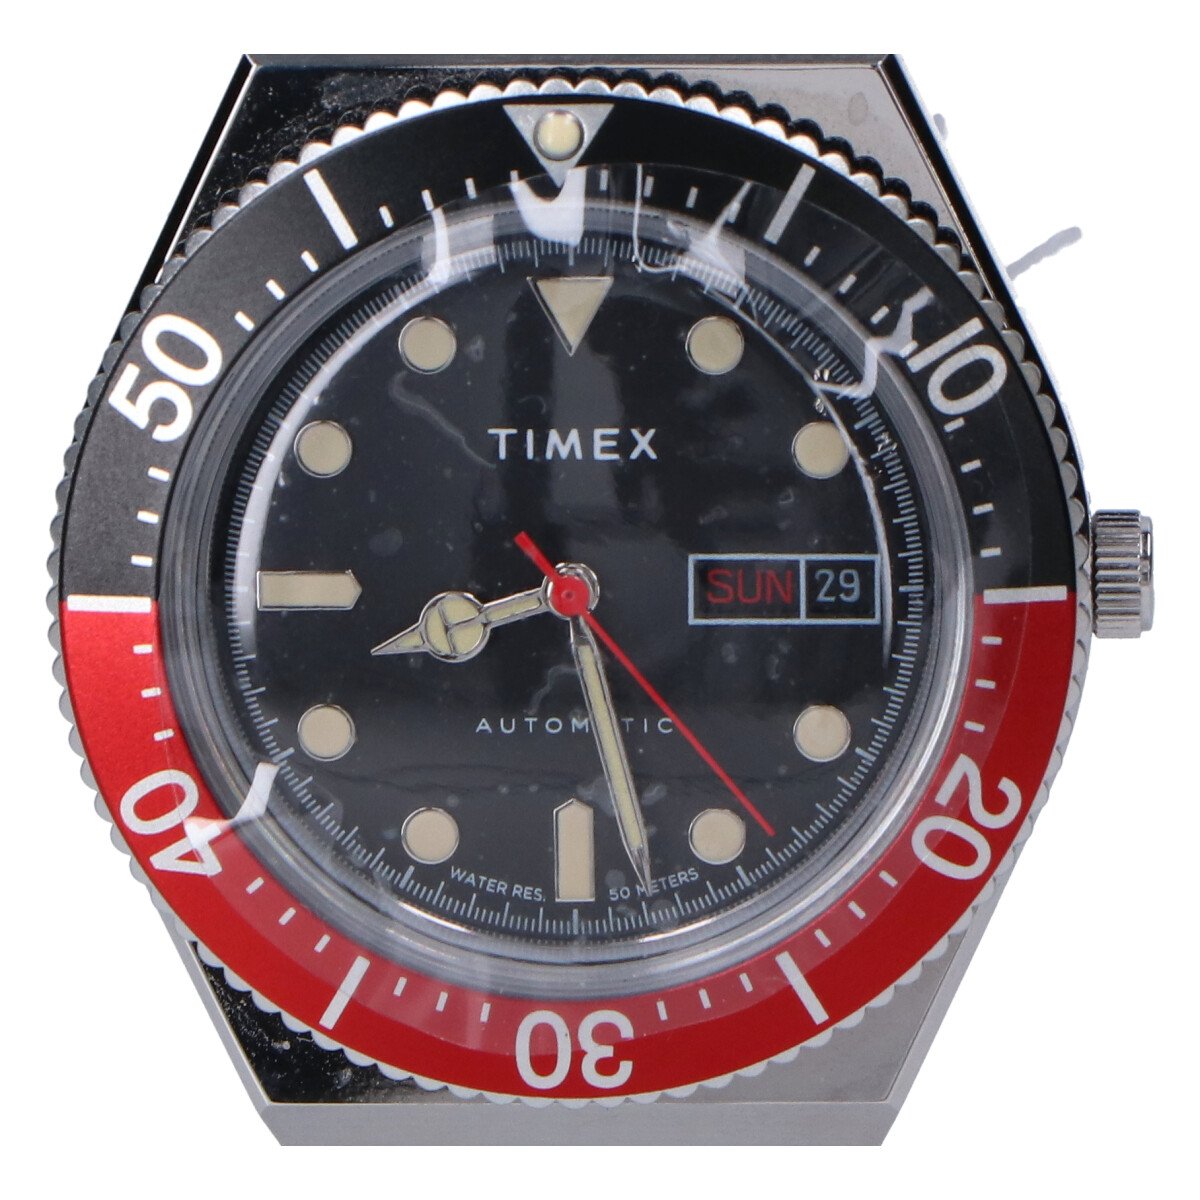 タイメックスのTW2U83400 M79 オートマチック シースルーバック 自動巻き時計の買取実績です。